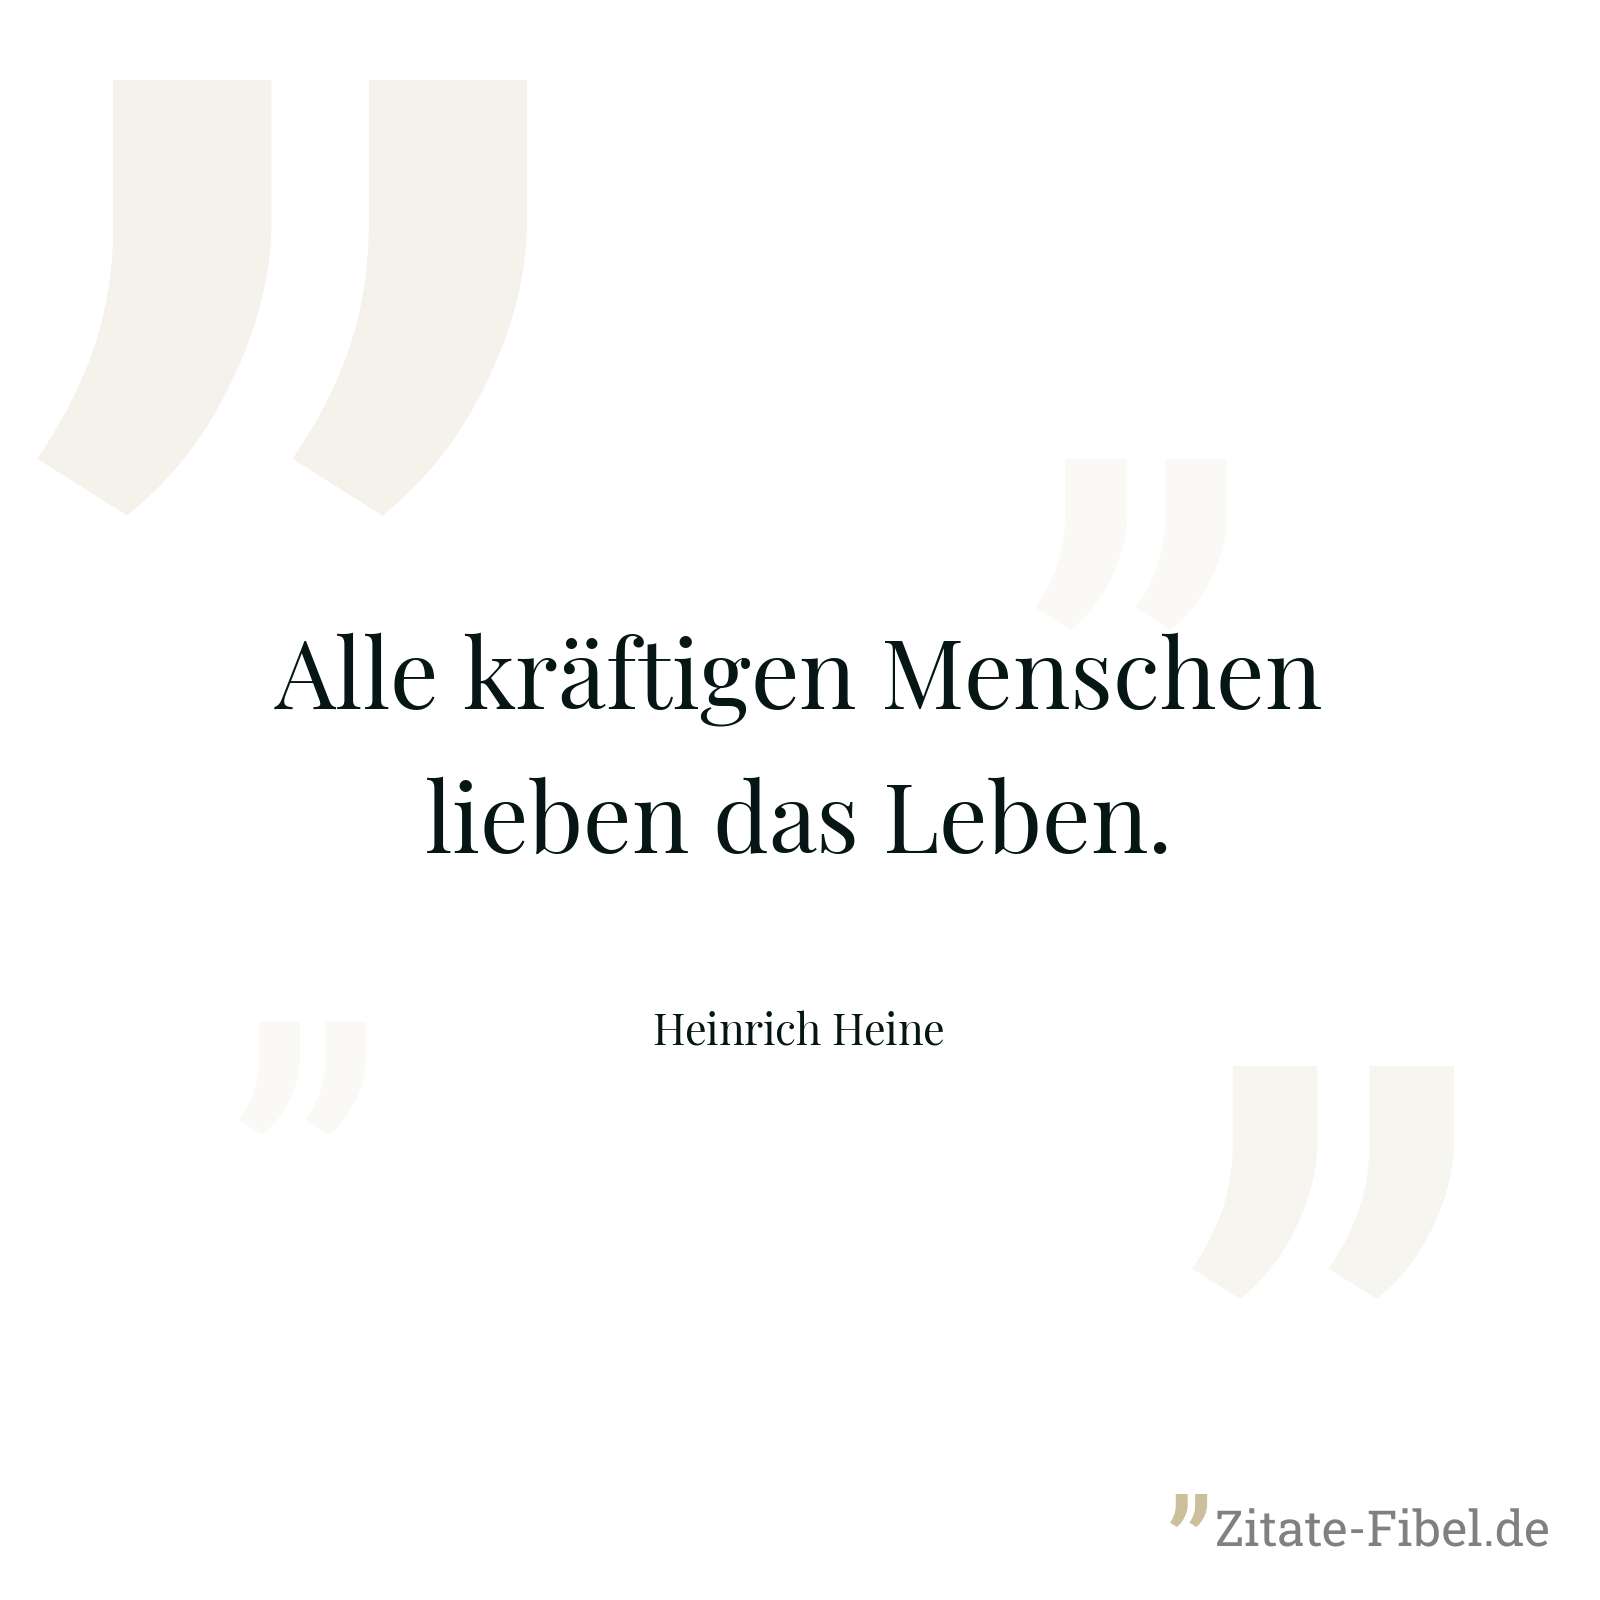 Alle kräftigen Menschen lieben das Leben. - Heinrich Heine